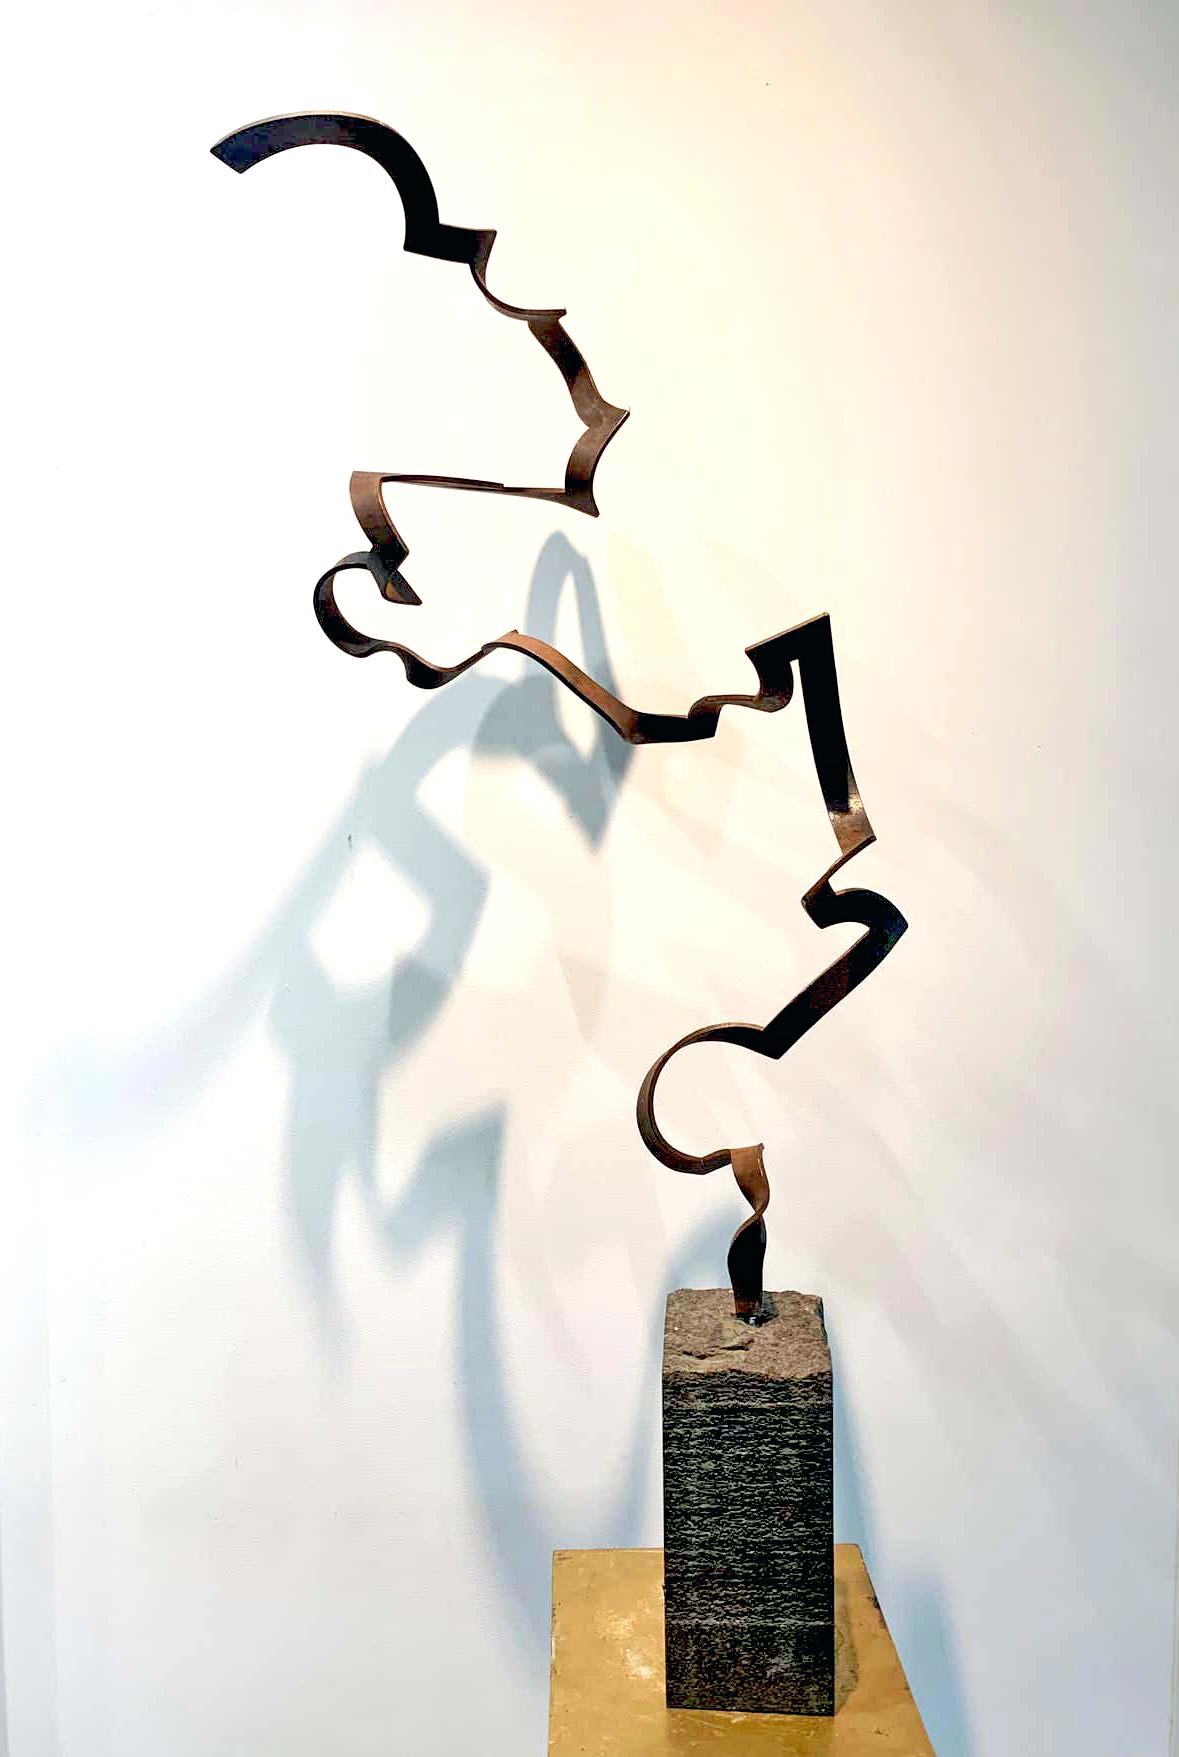 Steel Dance by Kuno Vollet Contemporary Steel Sculpture for indoor or outdoor